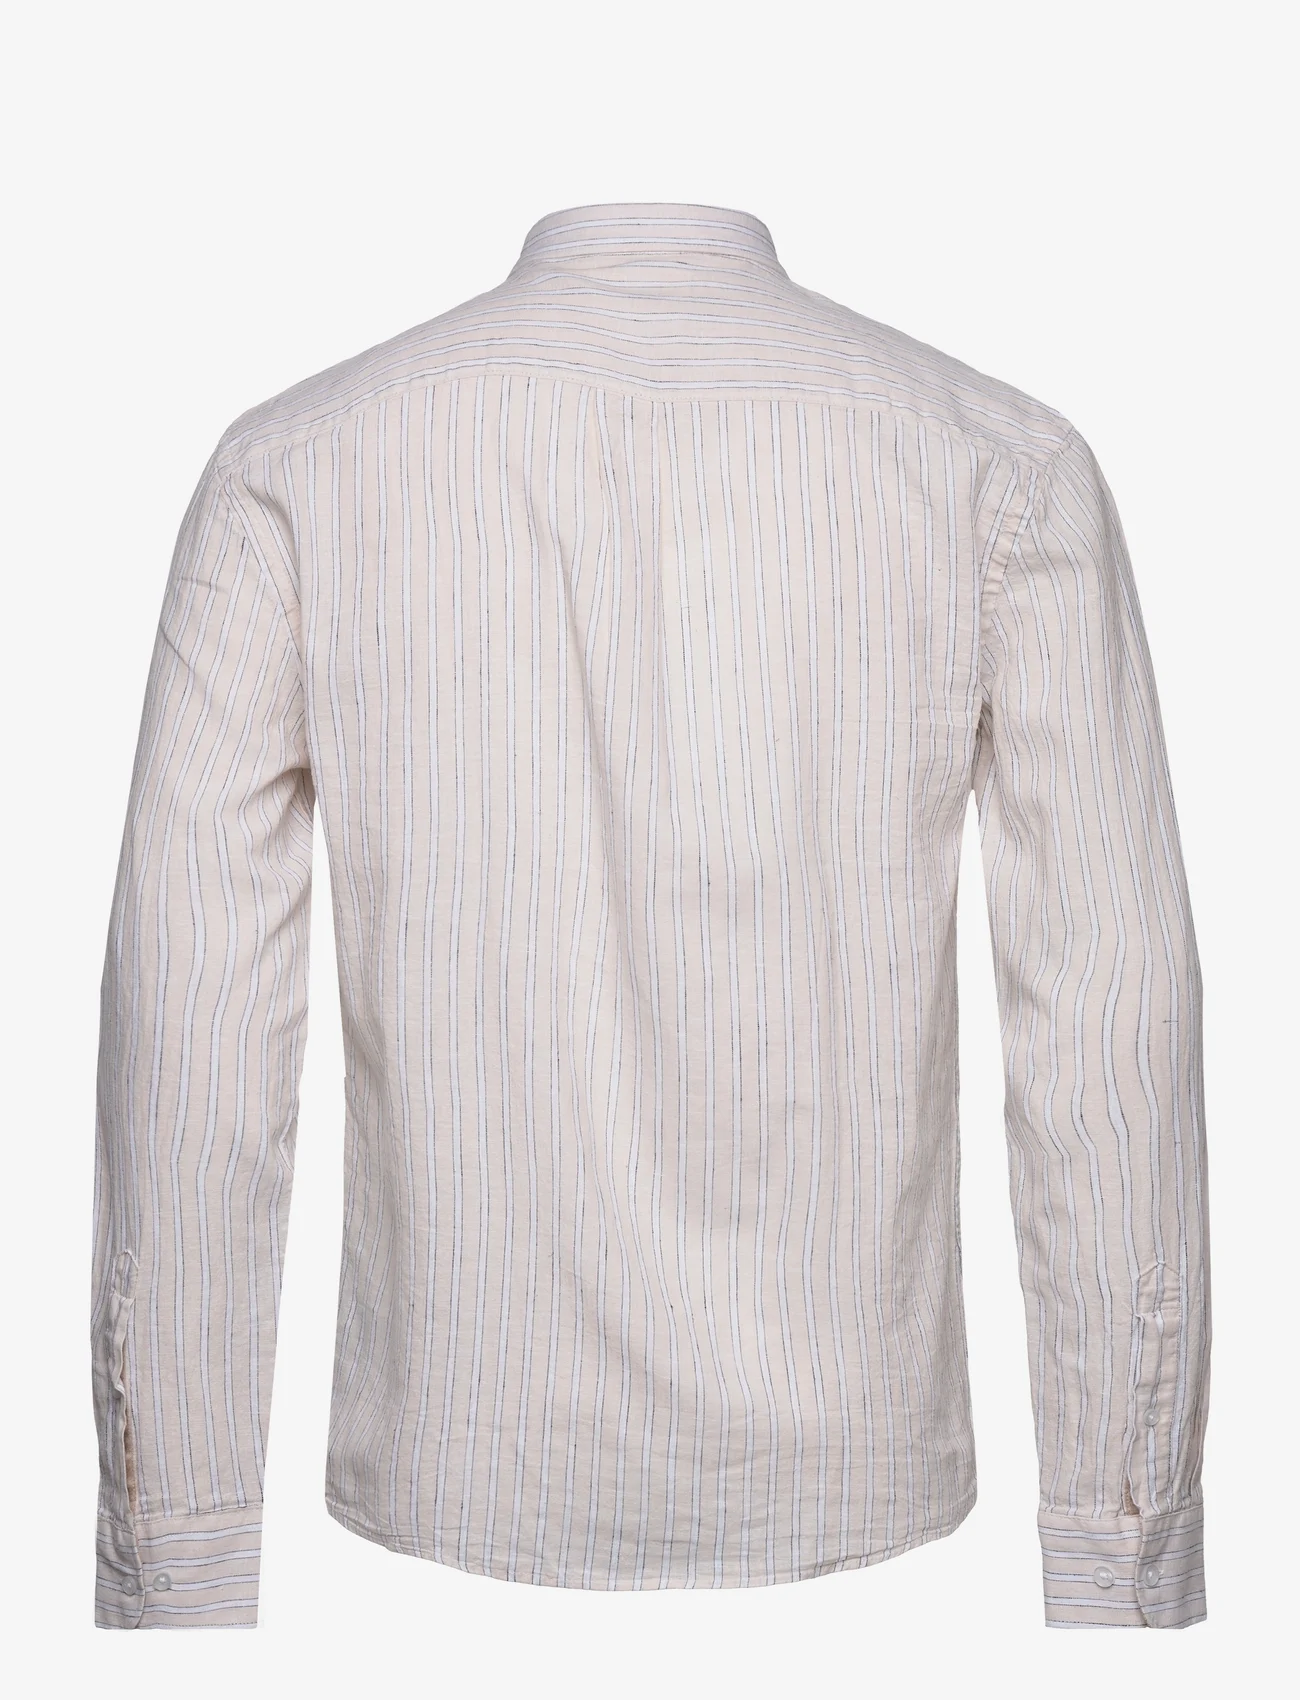 Lindbergh - Striped cotton/linen shirt L/S - linneskjortor - sand - 1